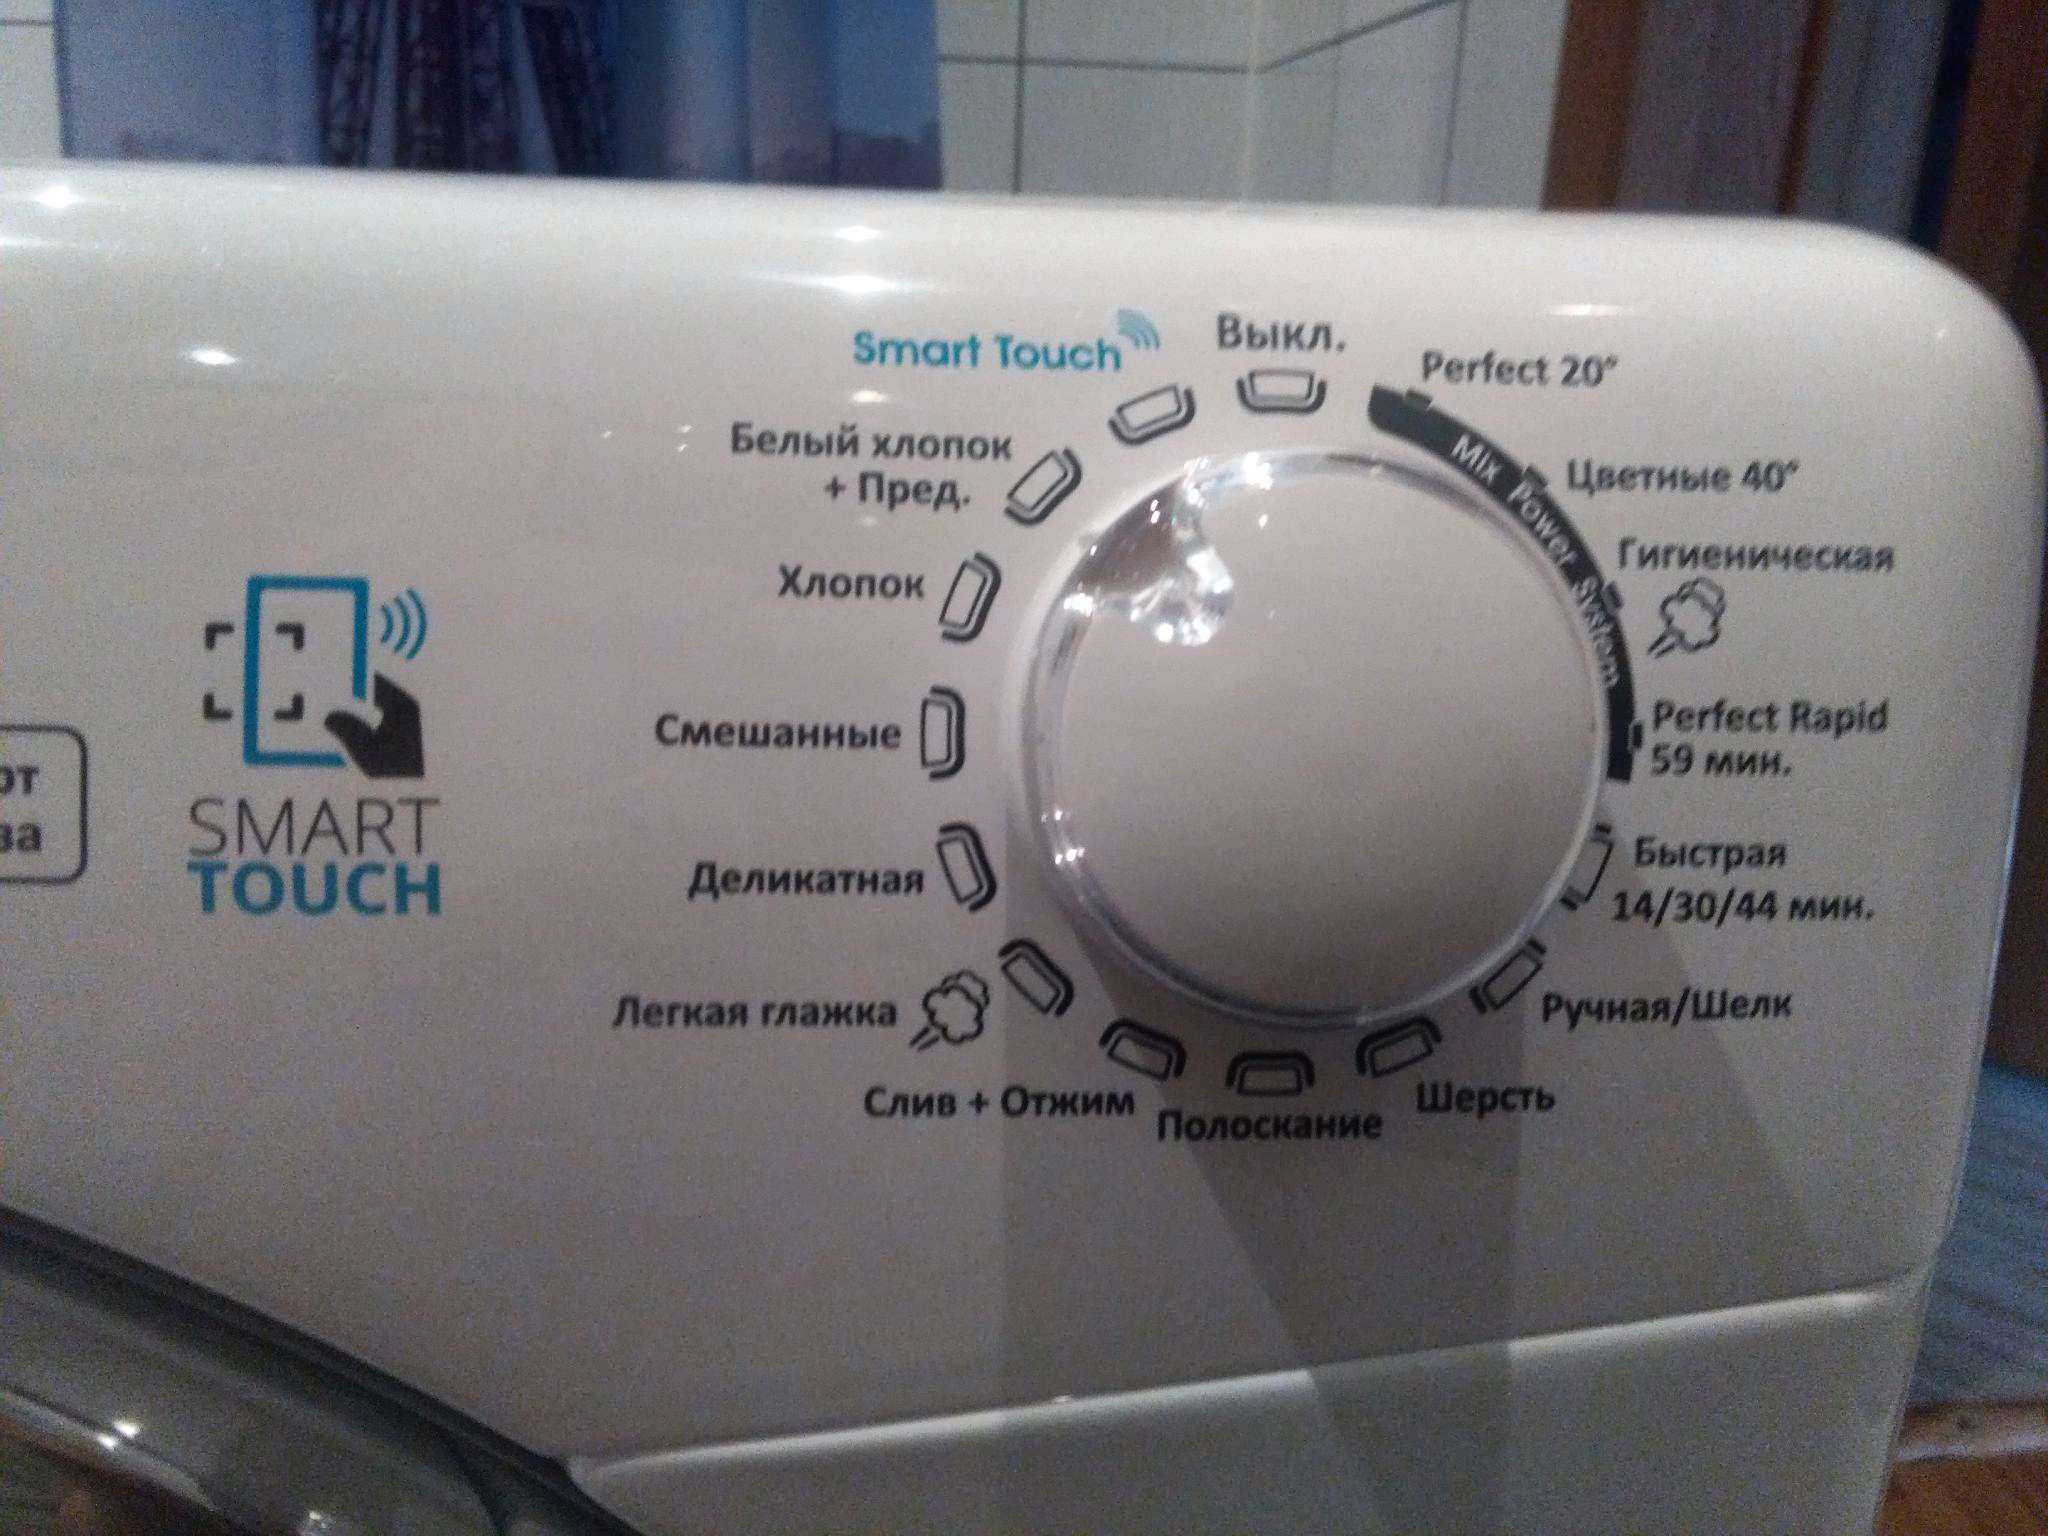 Сервис стиральных машин канди